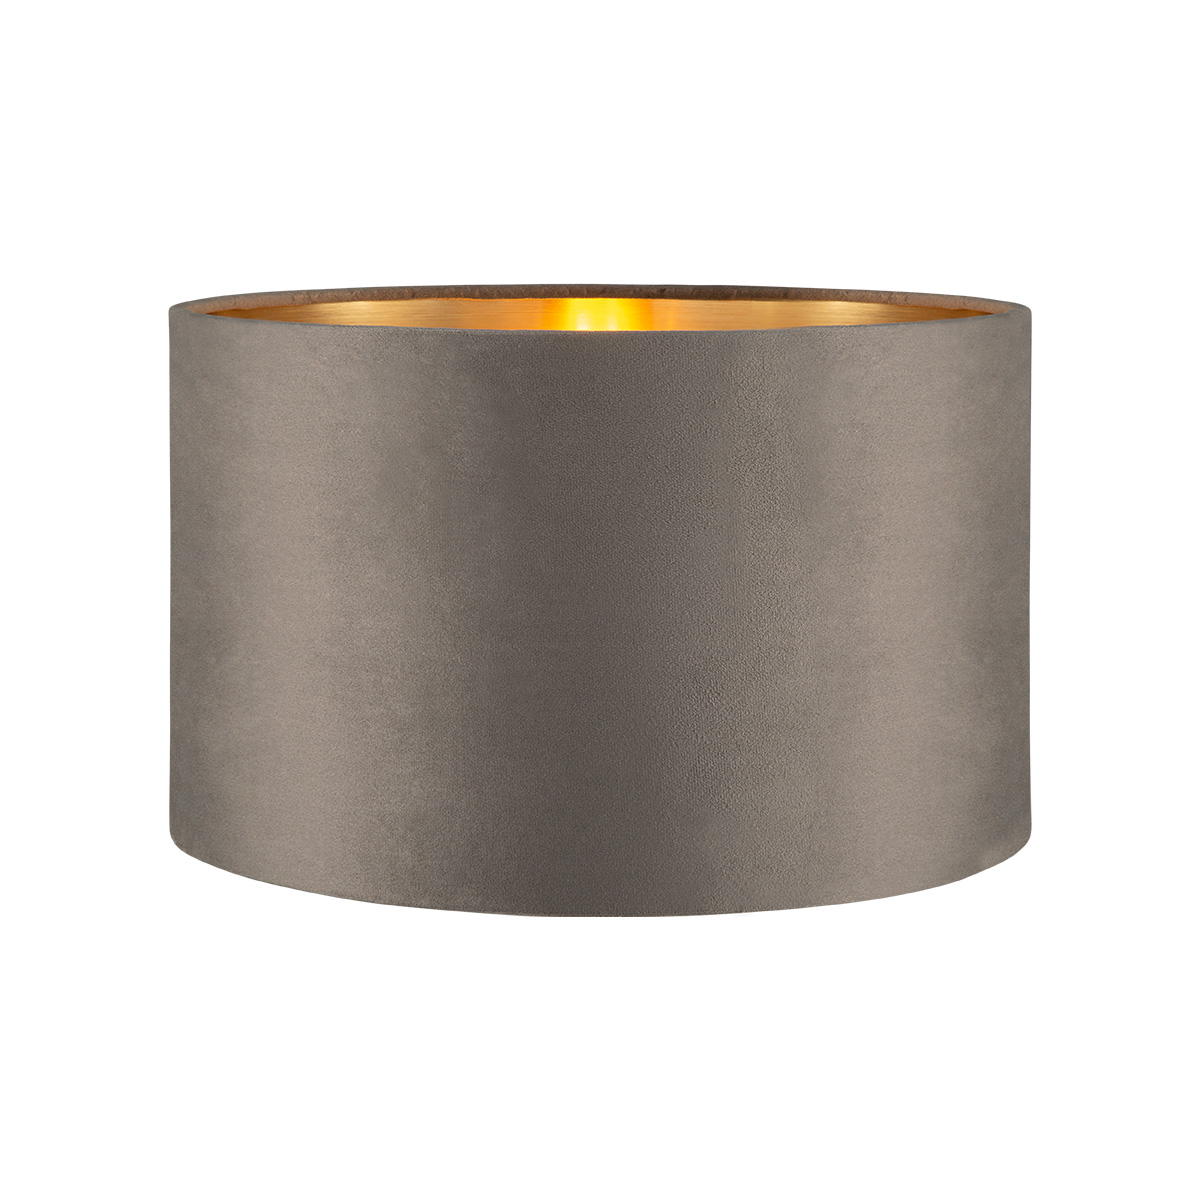 Tangla lighting - TLS7564-35GY - Lampshade - velvet - grey - diameter 35cm - E27